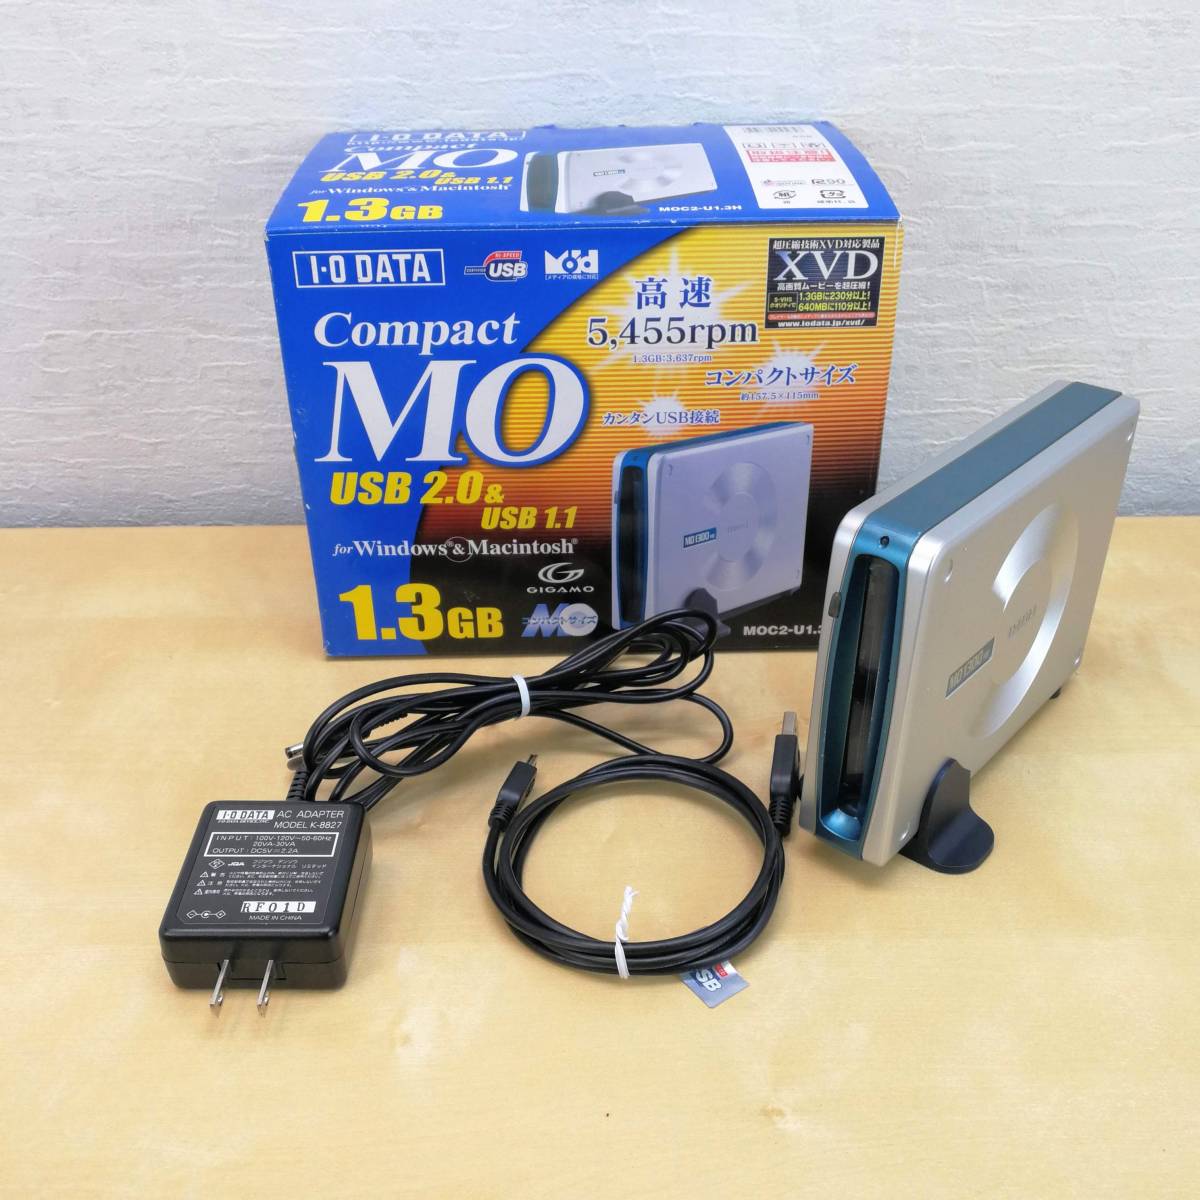 I-O DATA MOC2-U1.3R USB2.0 1.1対応 コンパクトMOドライブ データ用